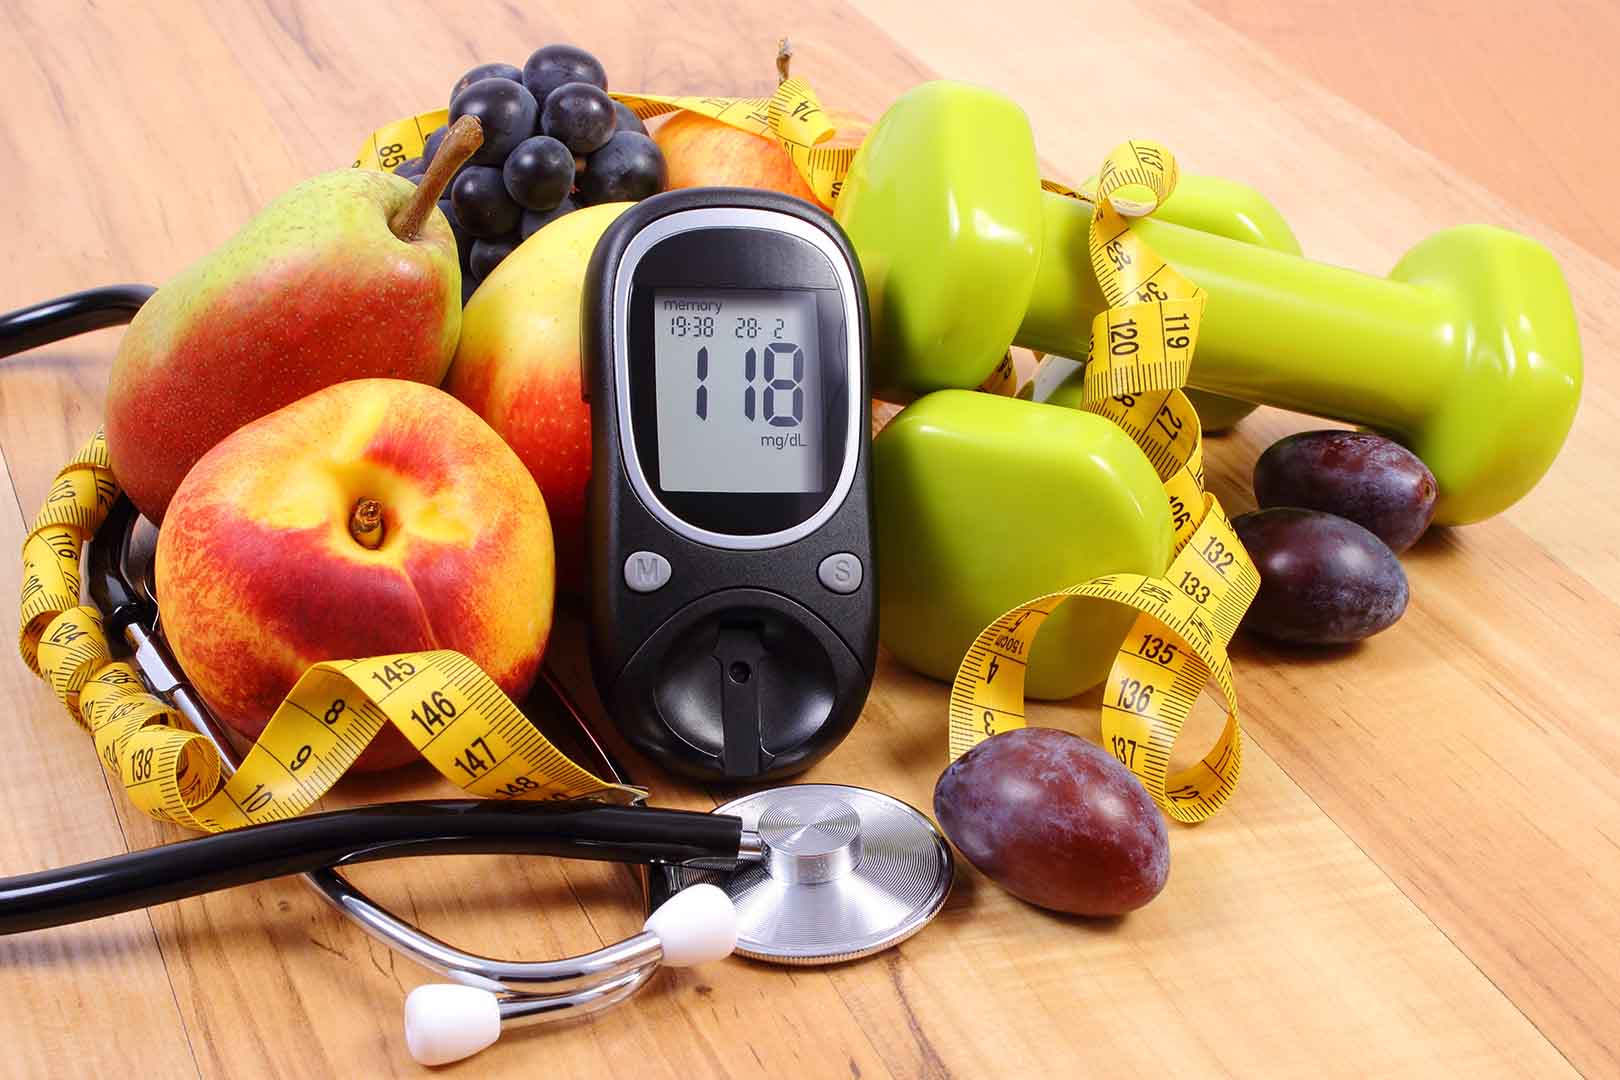 Benarkah Penderita Diabetes Tipe 2 Harus Membatasi Asupan Buah?